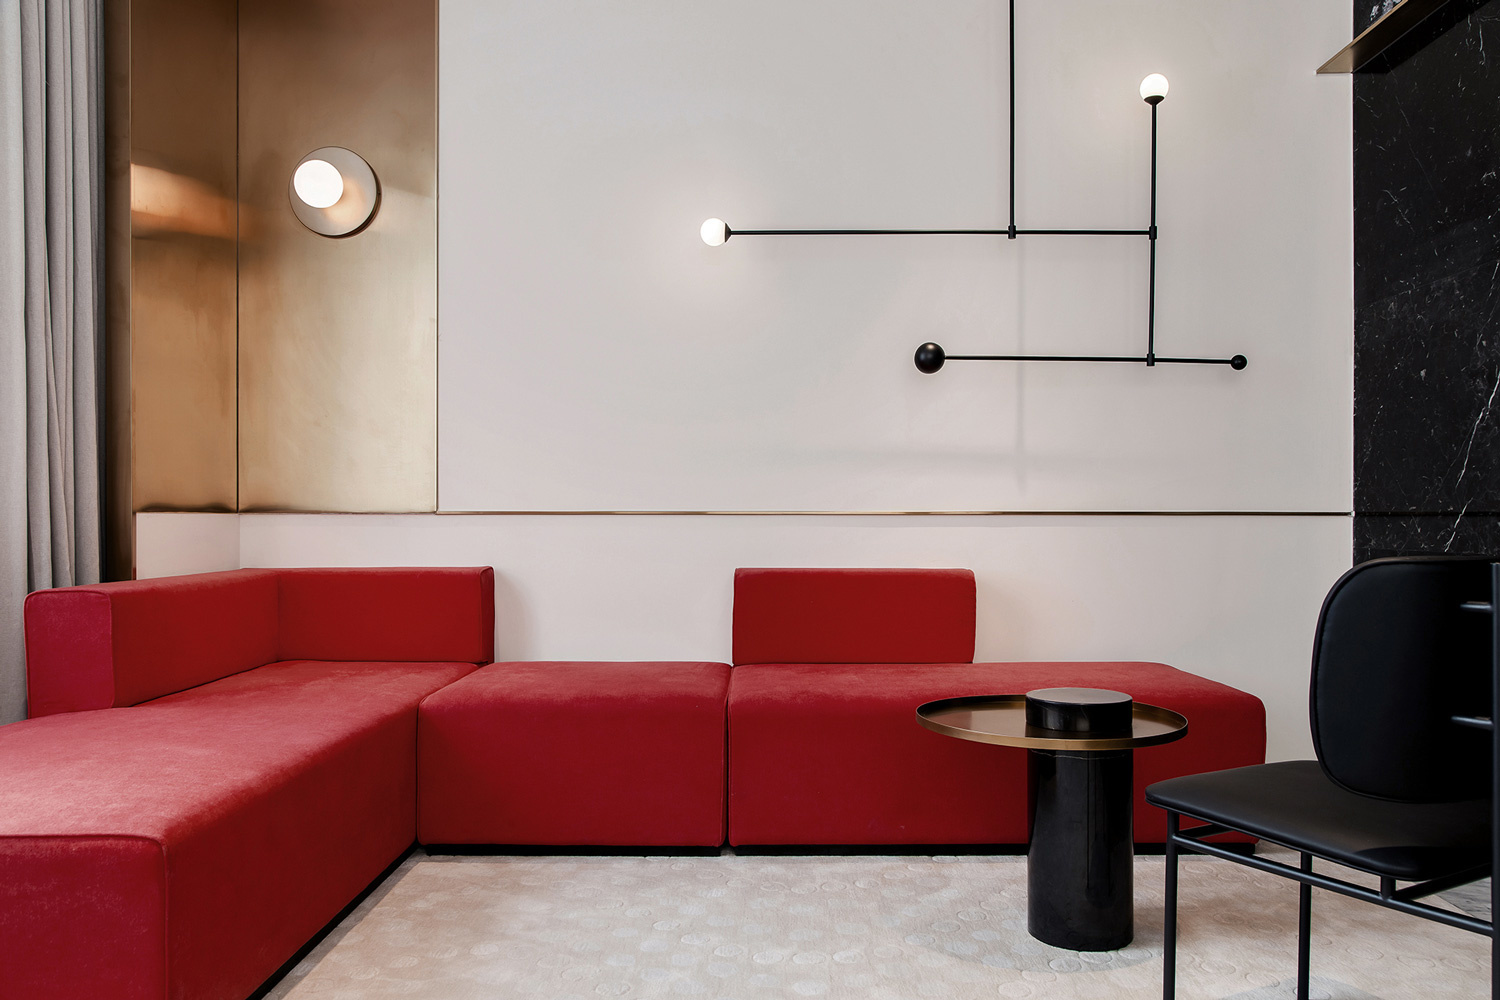 Với người yêu thích phong cách tối giản nhưng vẫn muốn tạo sự nổi bật nhất định thì kiểu sofa module màu đỏ sẽ là lựa chọn phù hợp cho phòng khách nhỏ gọn này.